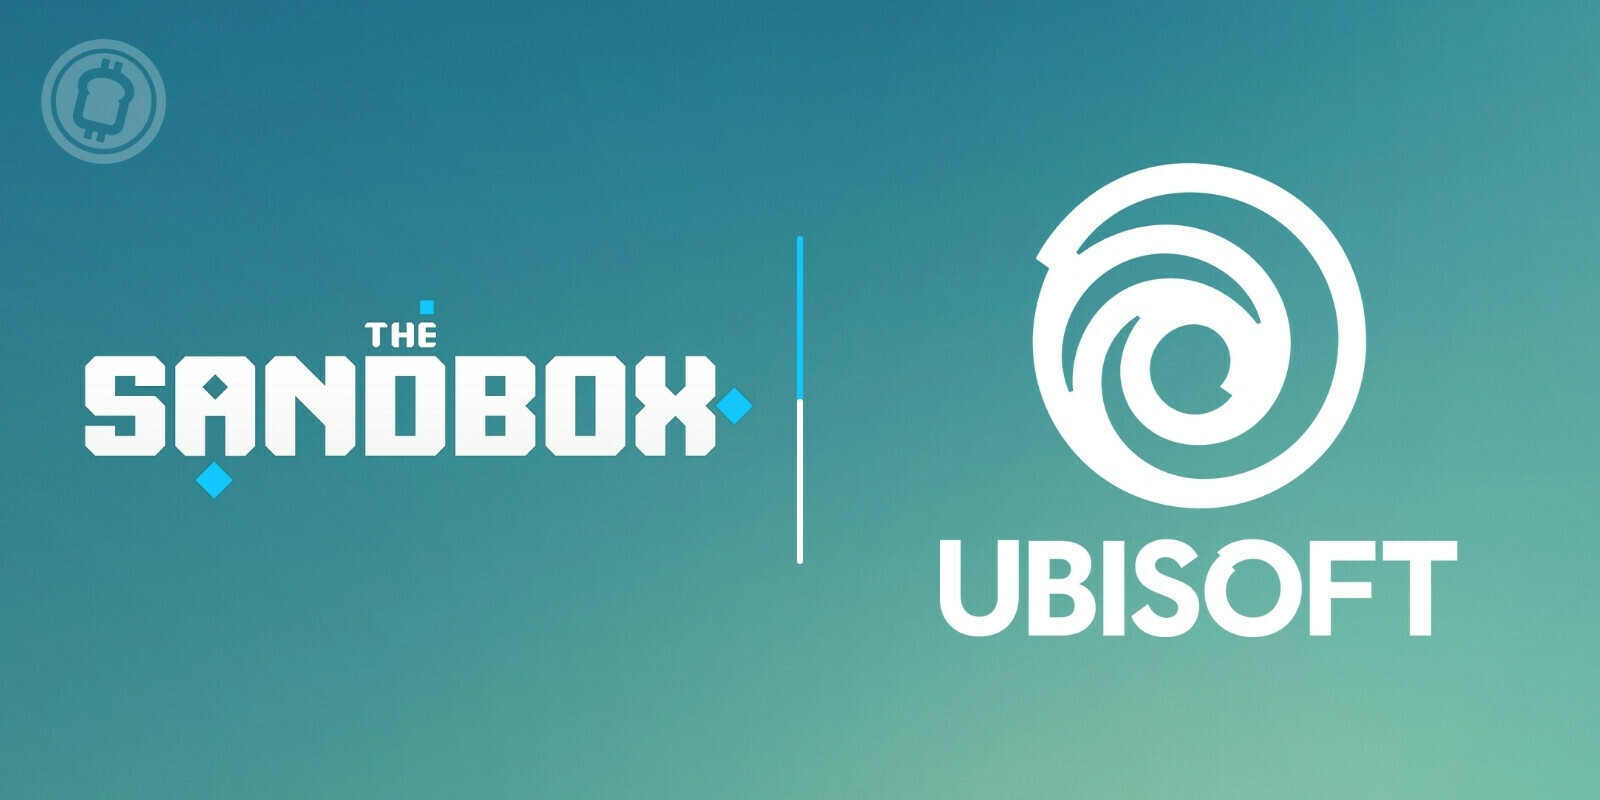 Ubisoft rejoint le metaverse de The Sandbox pour y proposer des expériences interactives